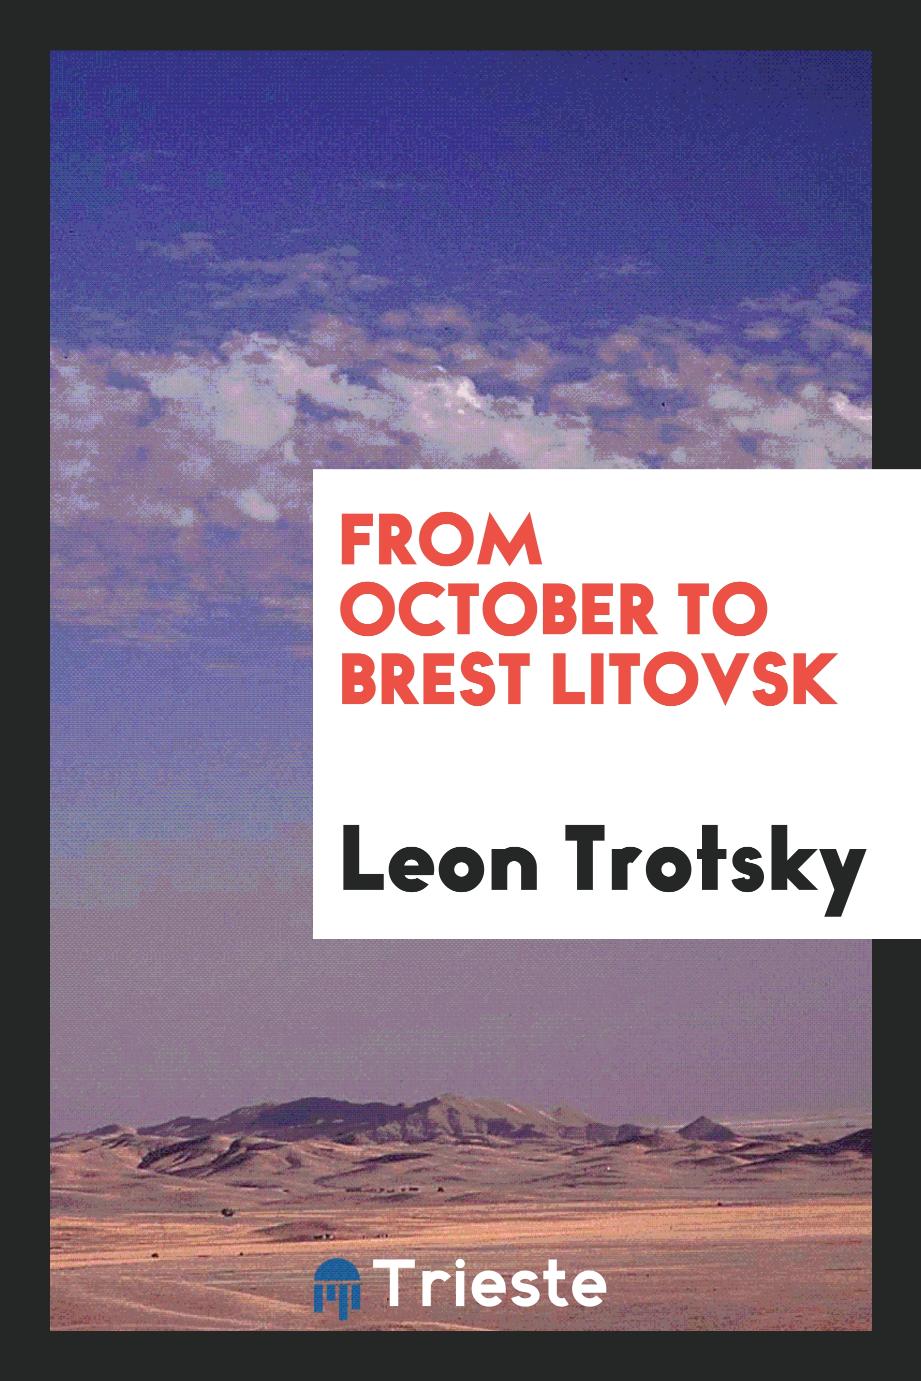 From October to Brest Litovsk